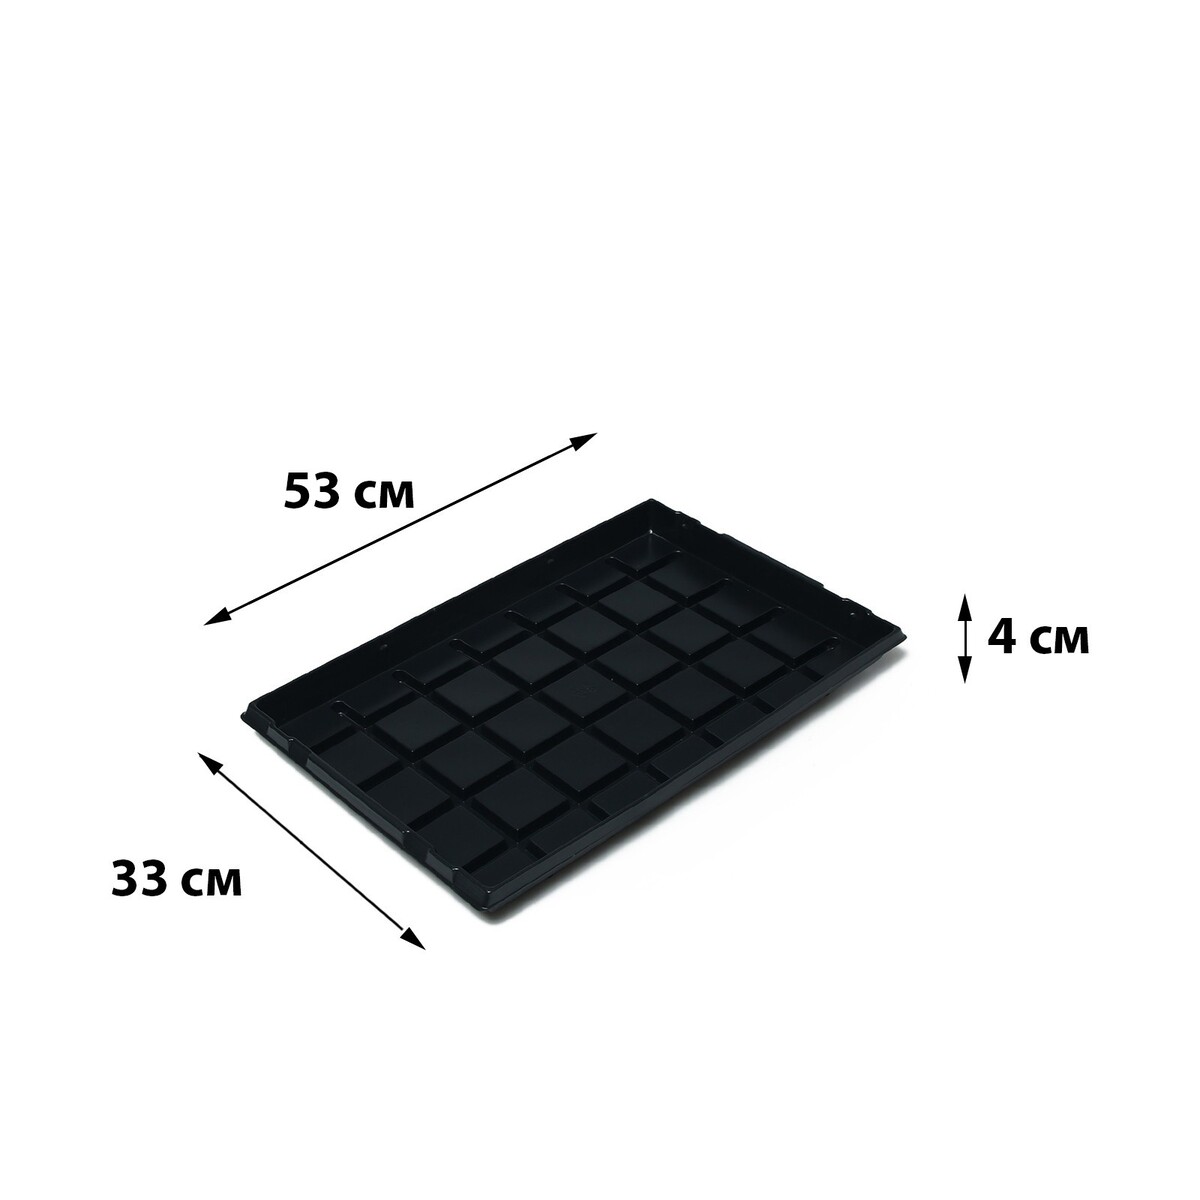 Поддон для рассады, 53 × 33 × 4 см, пластик, черный, greengo поддон для рассады 26 6 × 26 5 × 3 см пластик